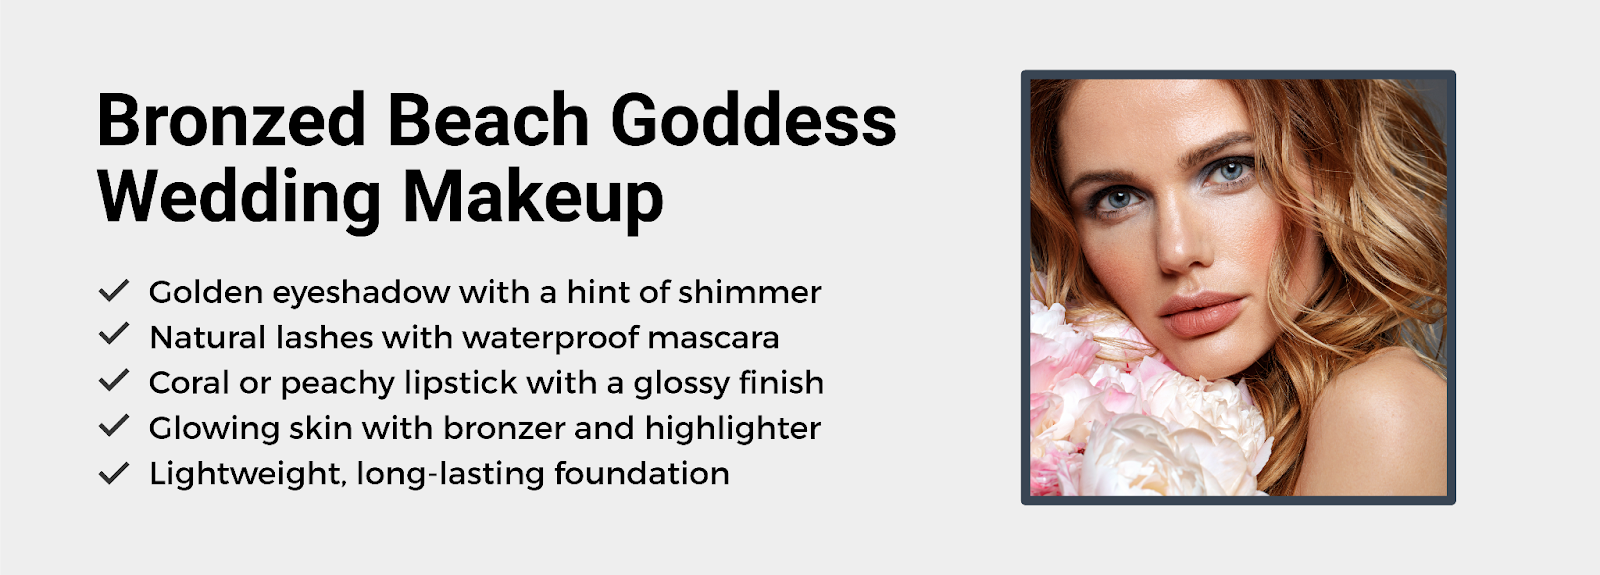 Bronzed beach goddess wedding makeup idea